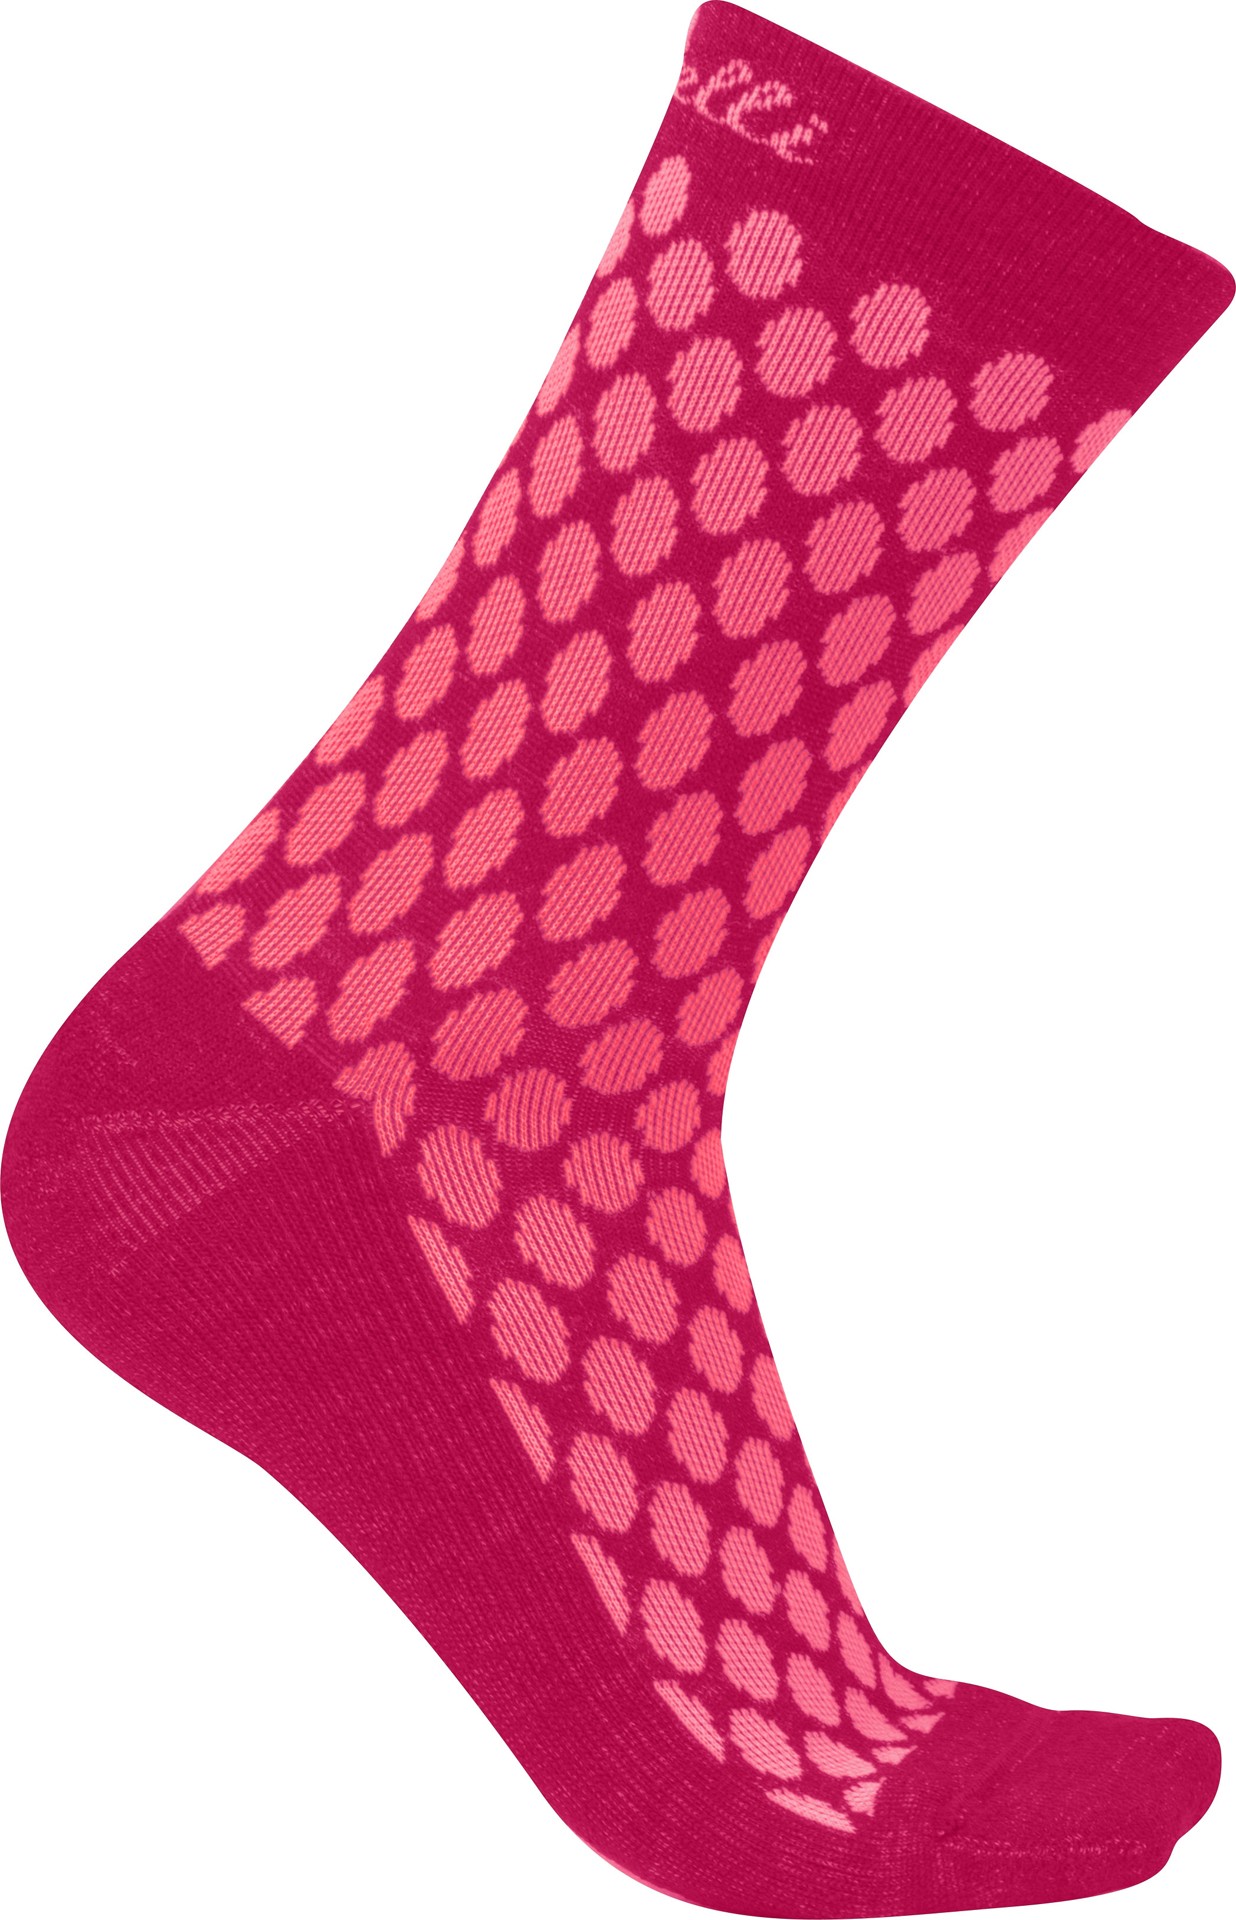 Castelli sfida 13 chaussettes de cyclisme femme brilliant rose